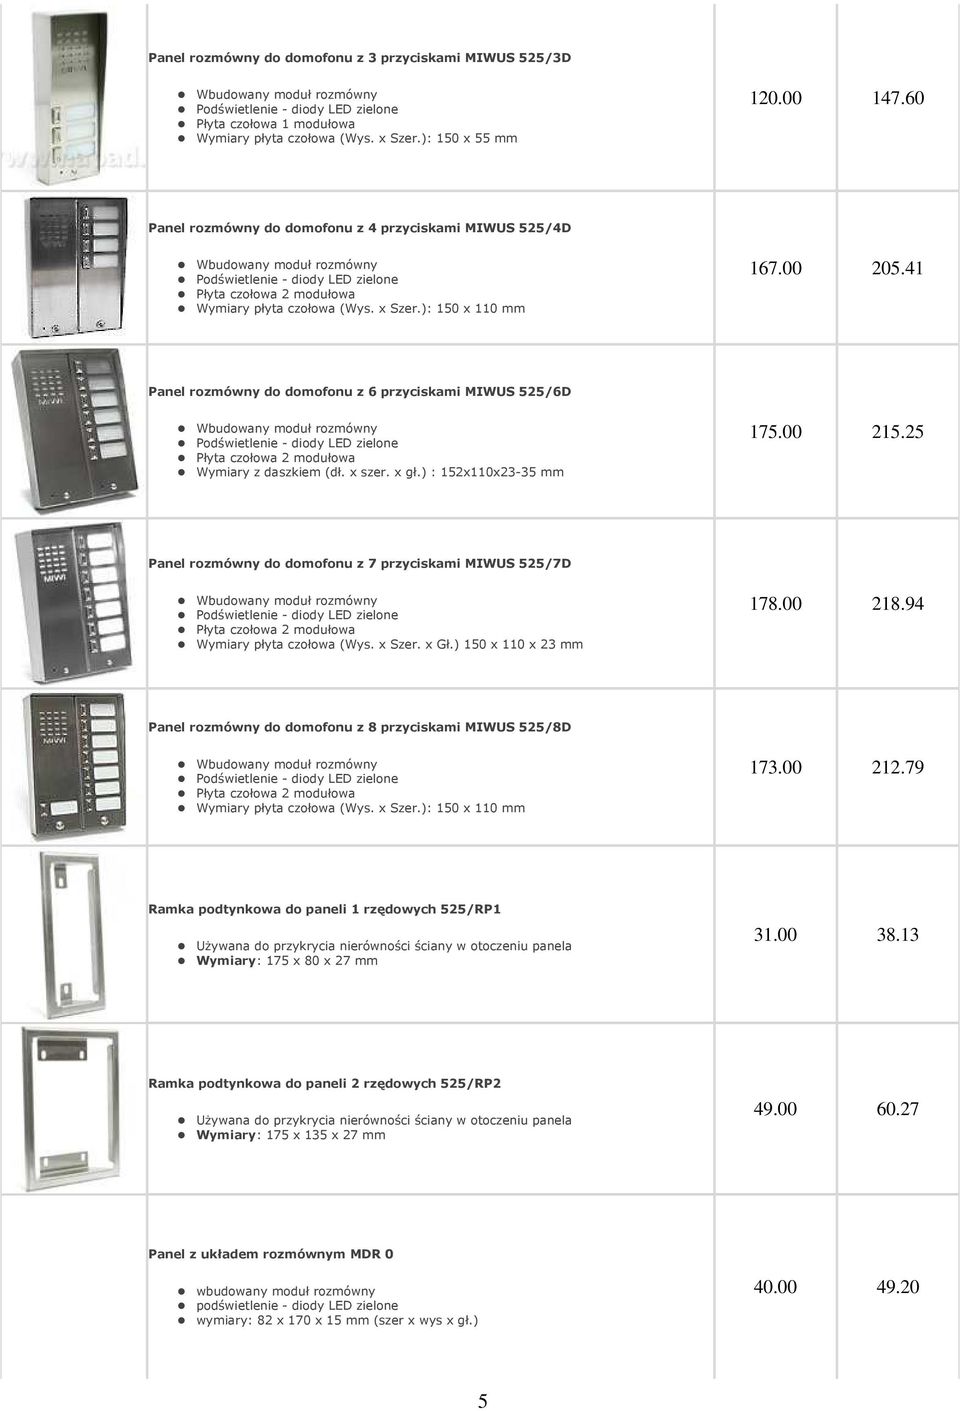 41 Panel rozmówny do domofonu z 6 przyciskami MIWUS 525/6D Płyta czołowa 2 modułowa Wymiary z daszkiem (dł. x szer. x gł.) : 152x110x23-35 mm 175.00 215.